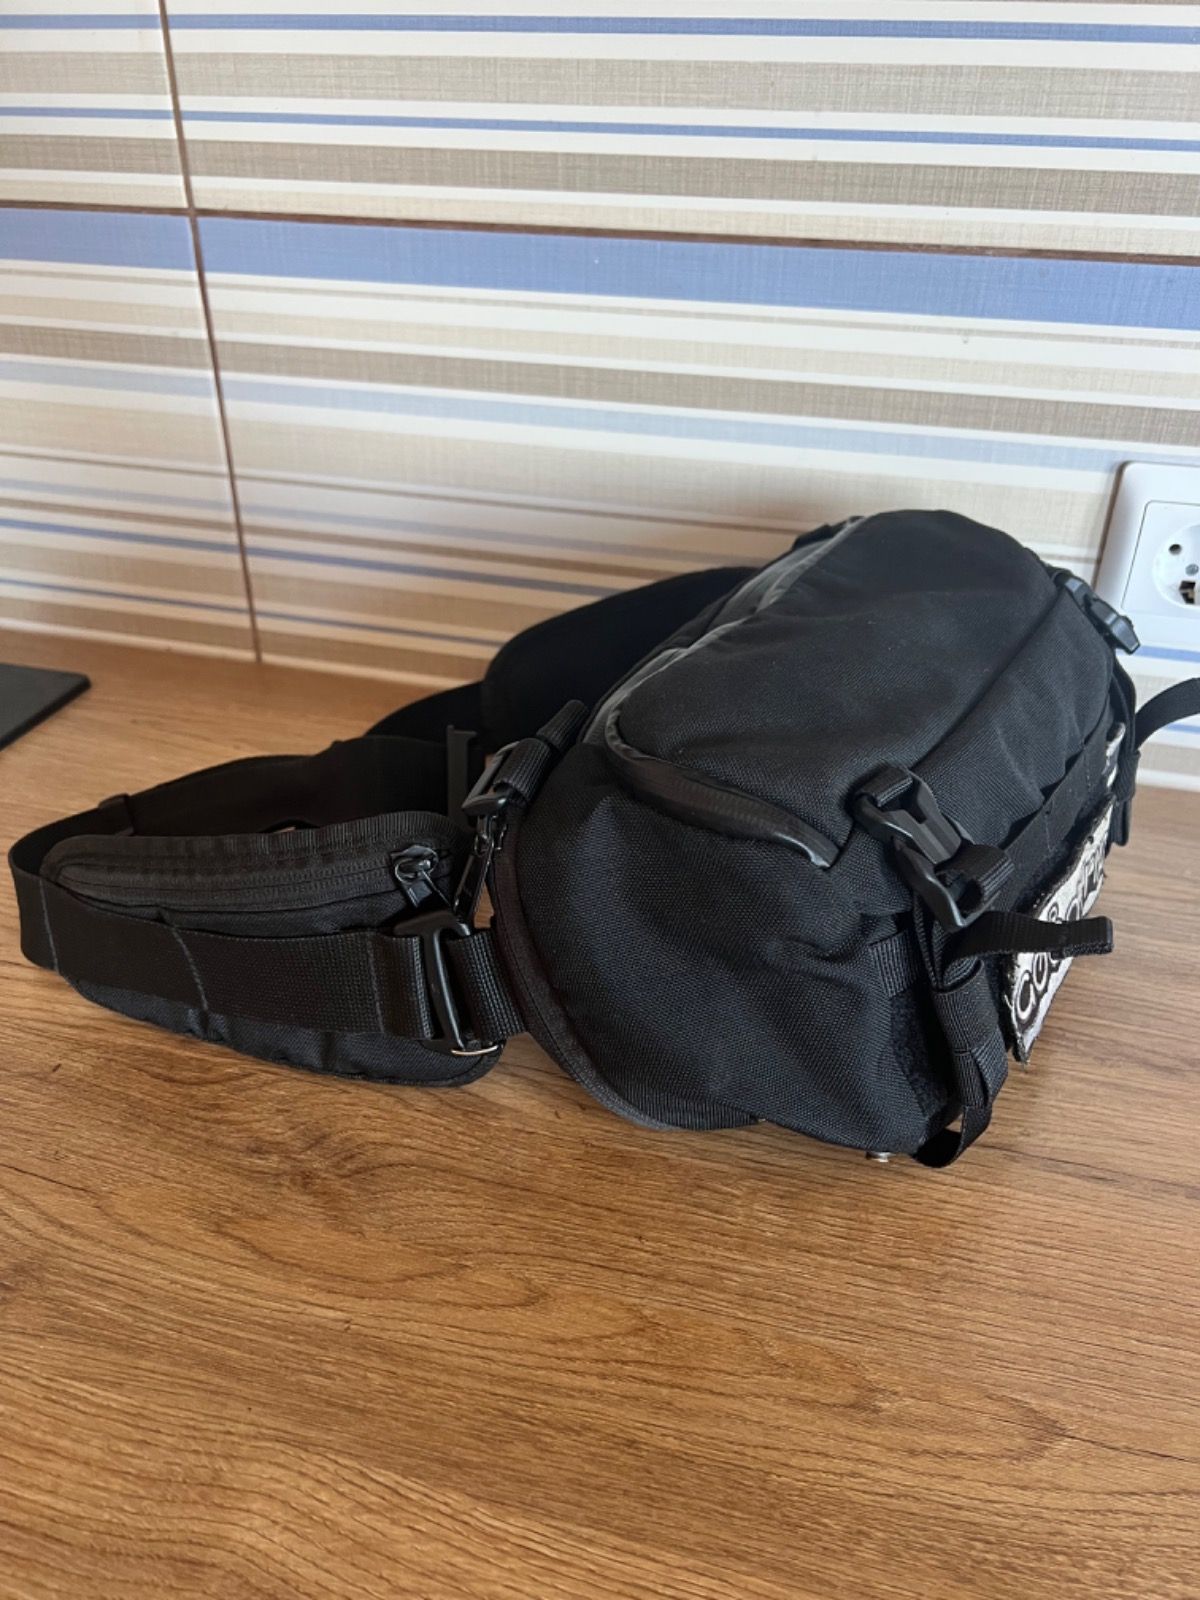 Нарульная сумка от компании black pack lt’s a Good Trip, отлично подойдет для велосипеда с жесткой вилкой, имеются крепление на руль, сьемные препление на пояс и встроенный облегченный рюкзак.